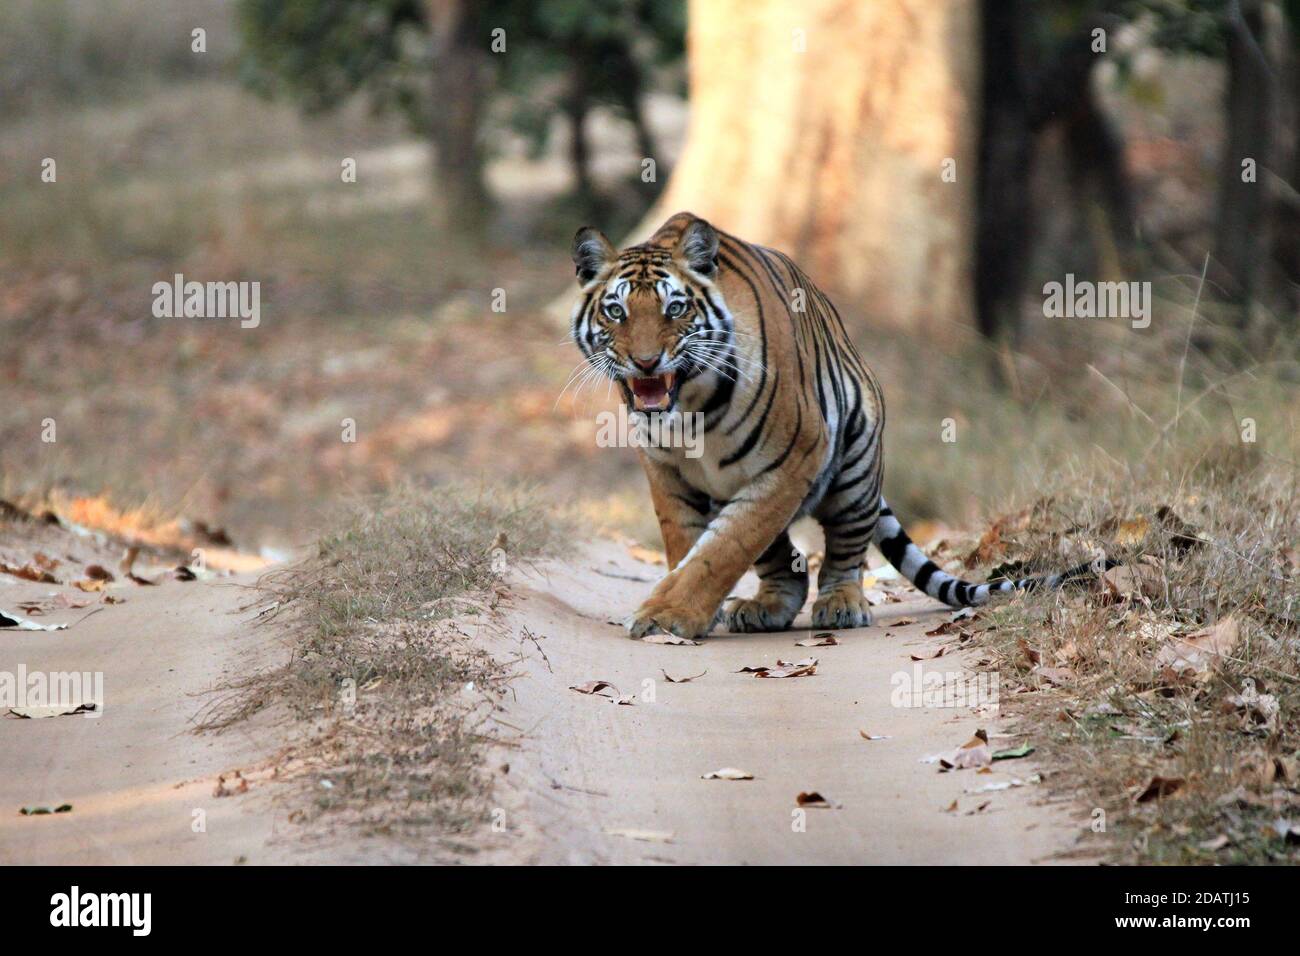 Tigre du Bengale (Panthera Tigris Tigris) sur la route de la saleté, montrant des dents. Bandhavgarh, Inde Banque D'Images